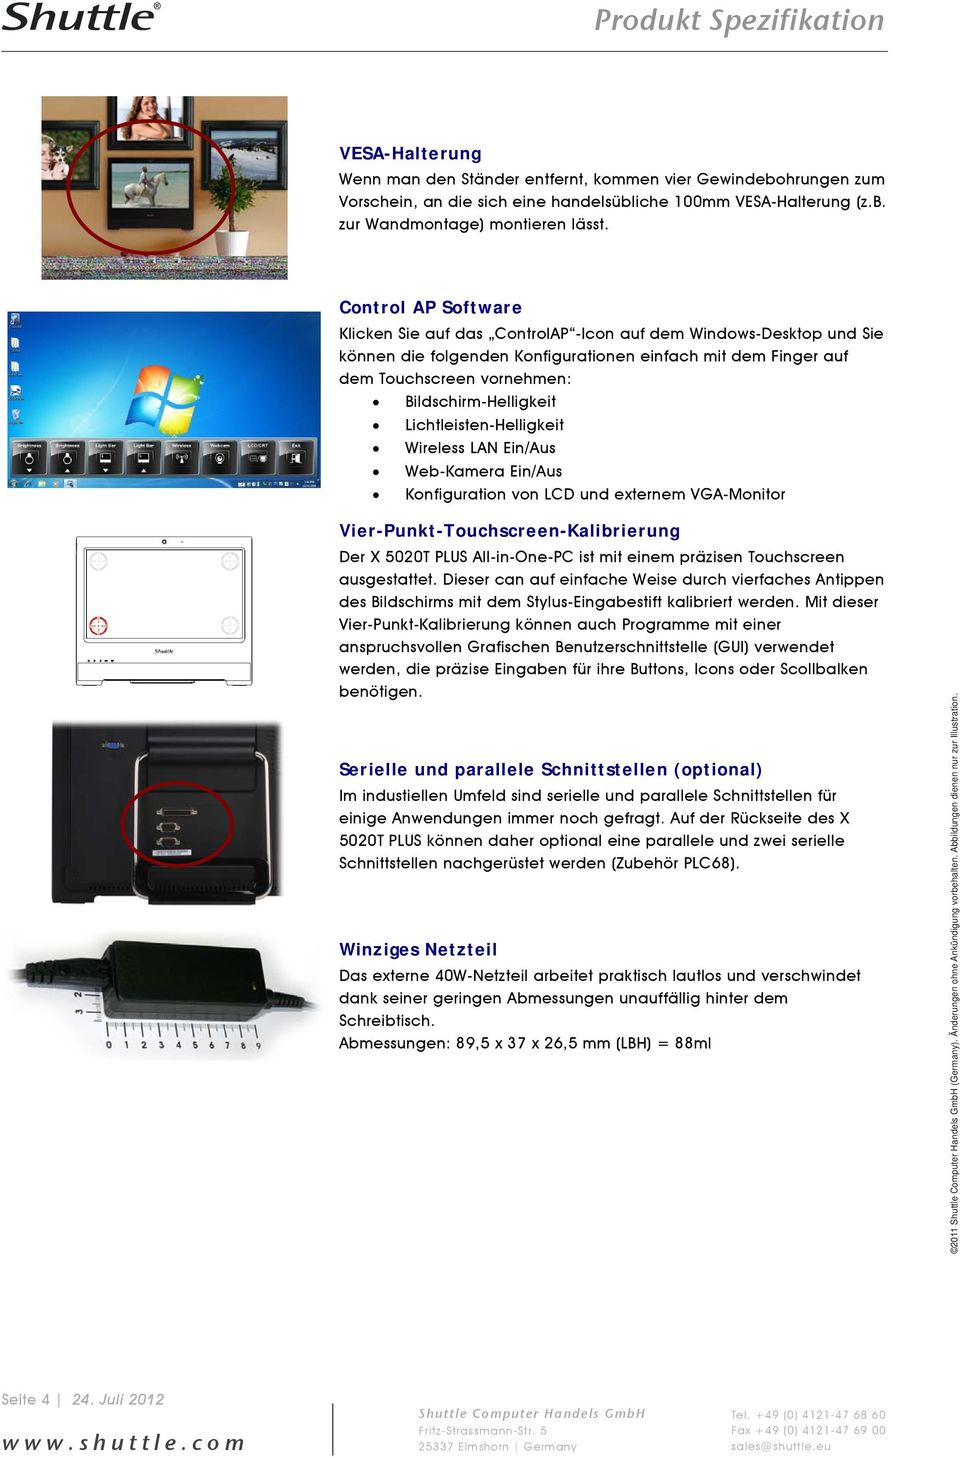 Bildschirm-Helligkeit Lichtleisten-Helligkeit Wireless LAN Ein/Aus Web-Kamera Ein/Aus Konfiguration von LCD und externem VGA-Monitor Vier-Punkt-Touchscreen-Kalibrierung Der X 5020T PLUS All-in-One-PC